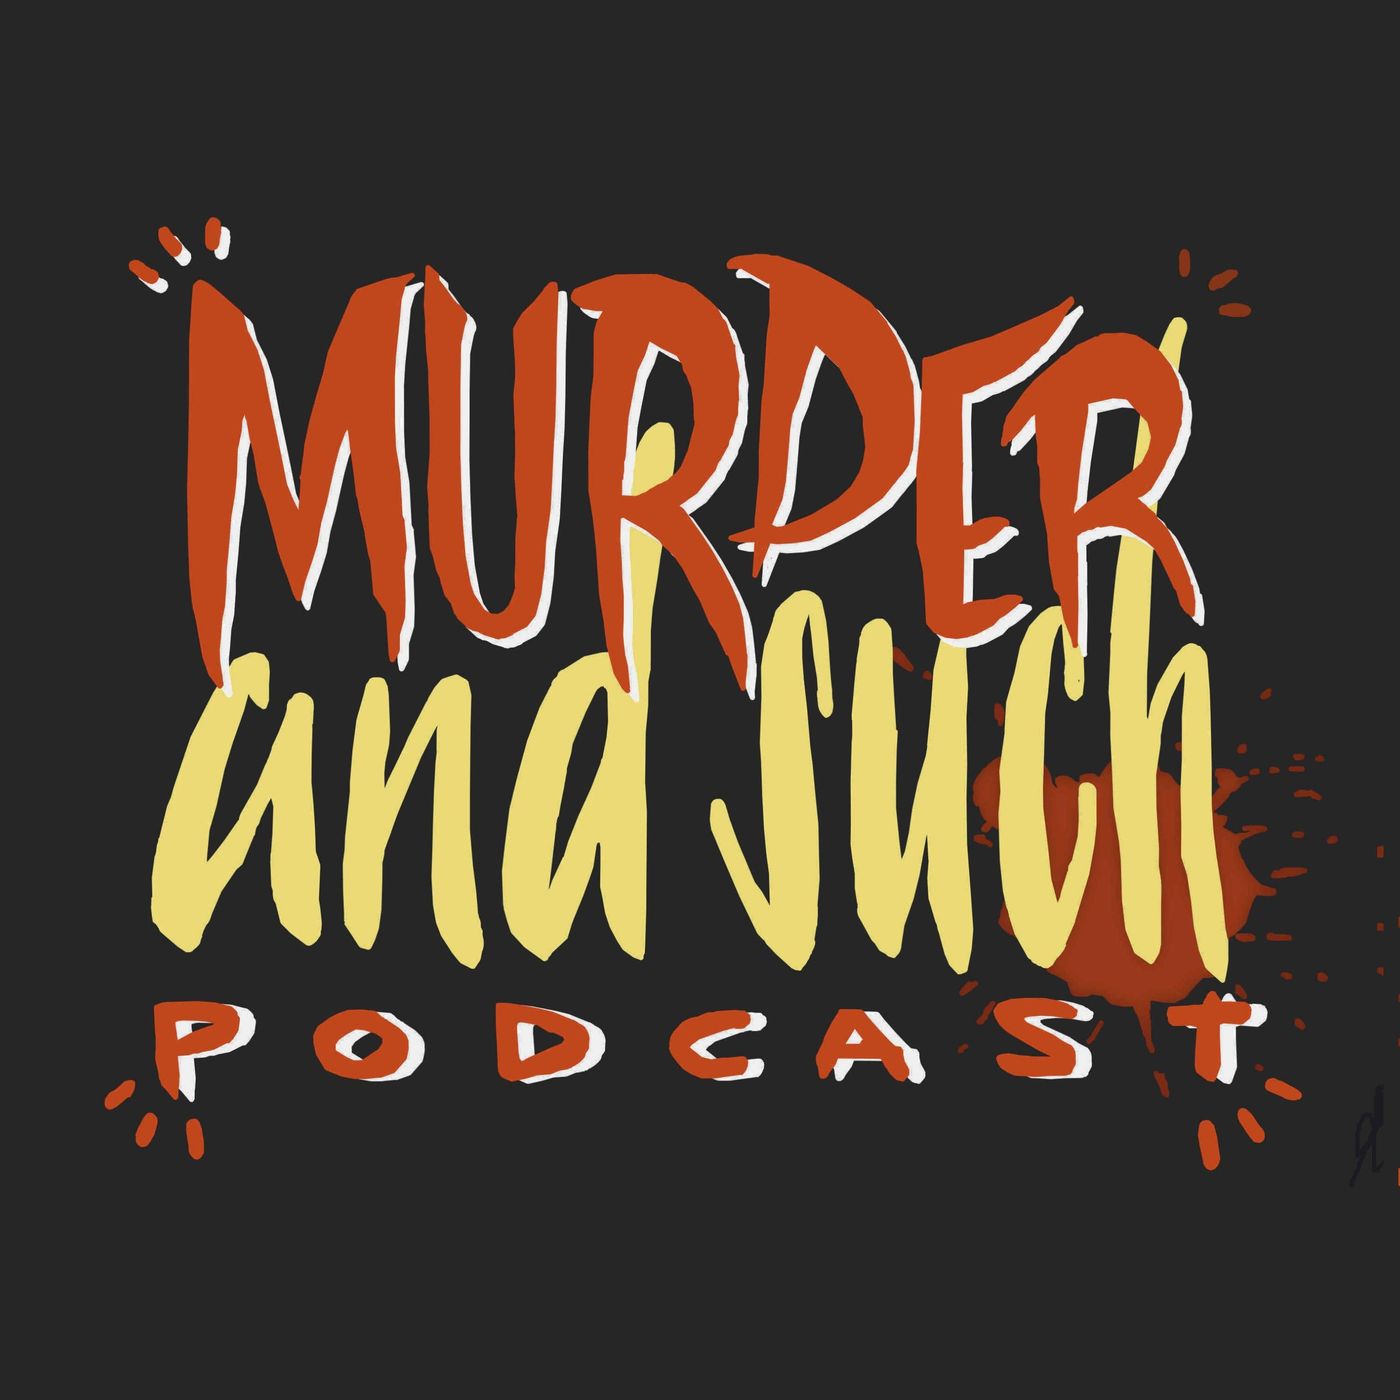 Episode 59 - Wichita Massacre